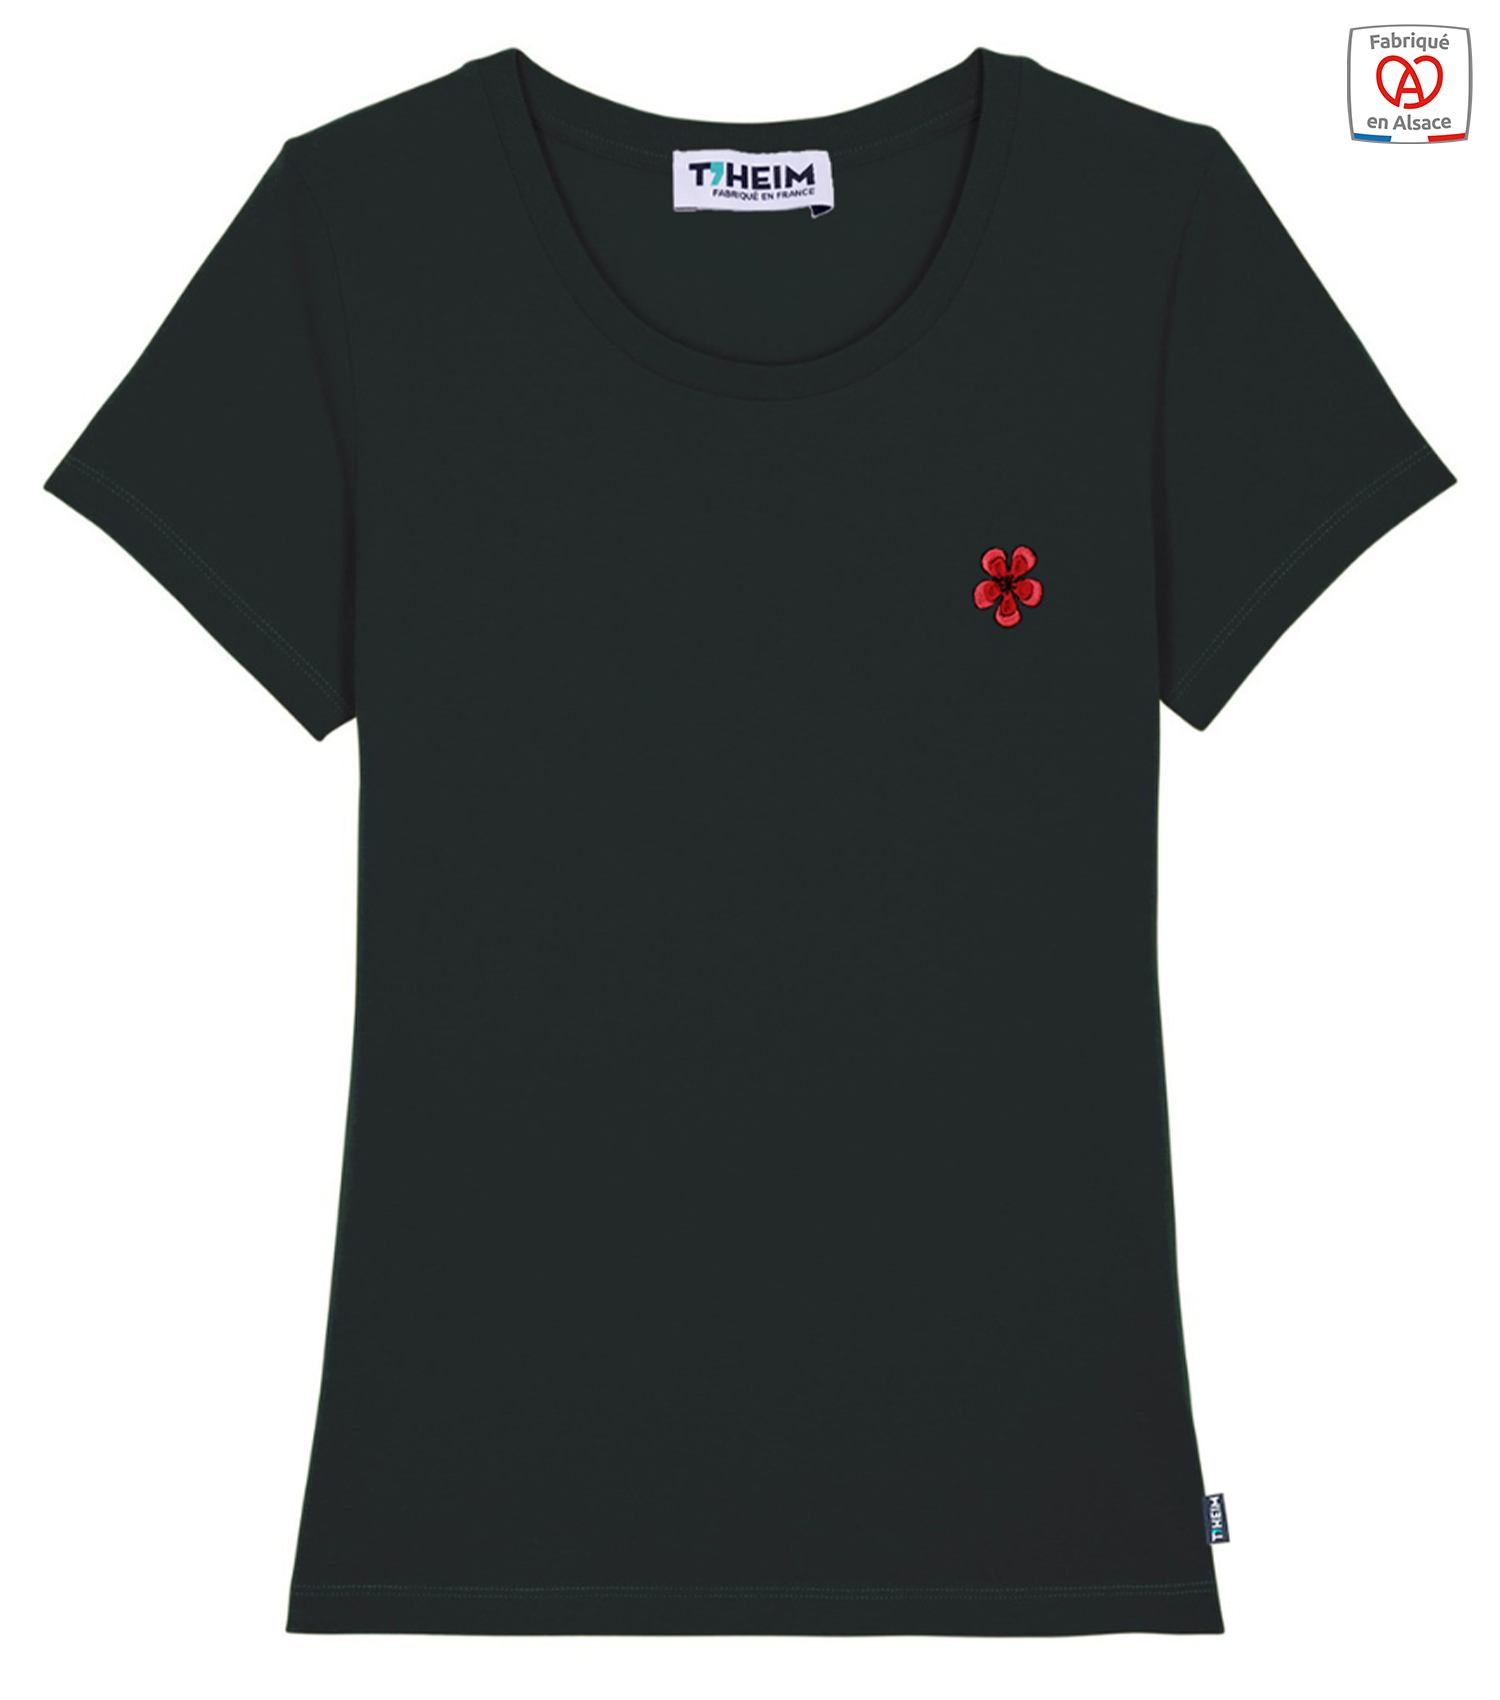 theim-t-shirt-femme-noir-fleur-geranium-made-in-france-1500x1700px